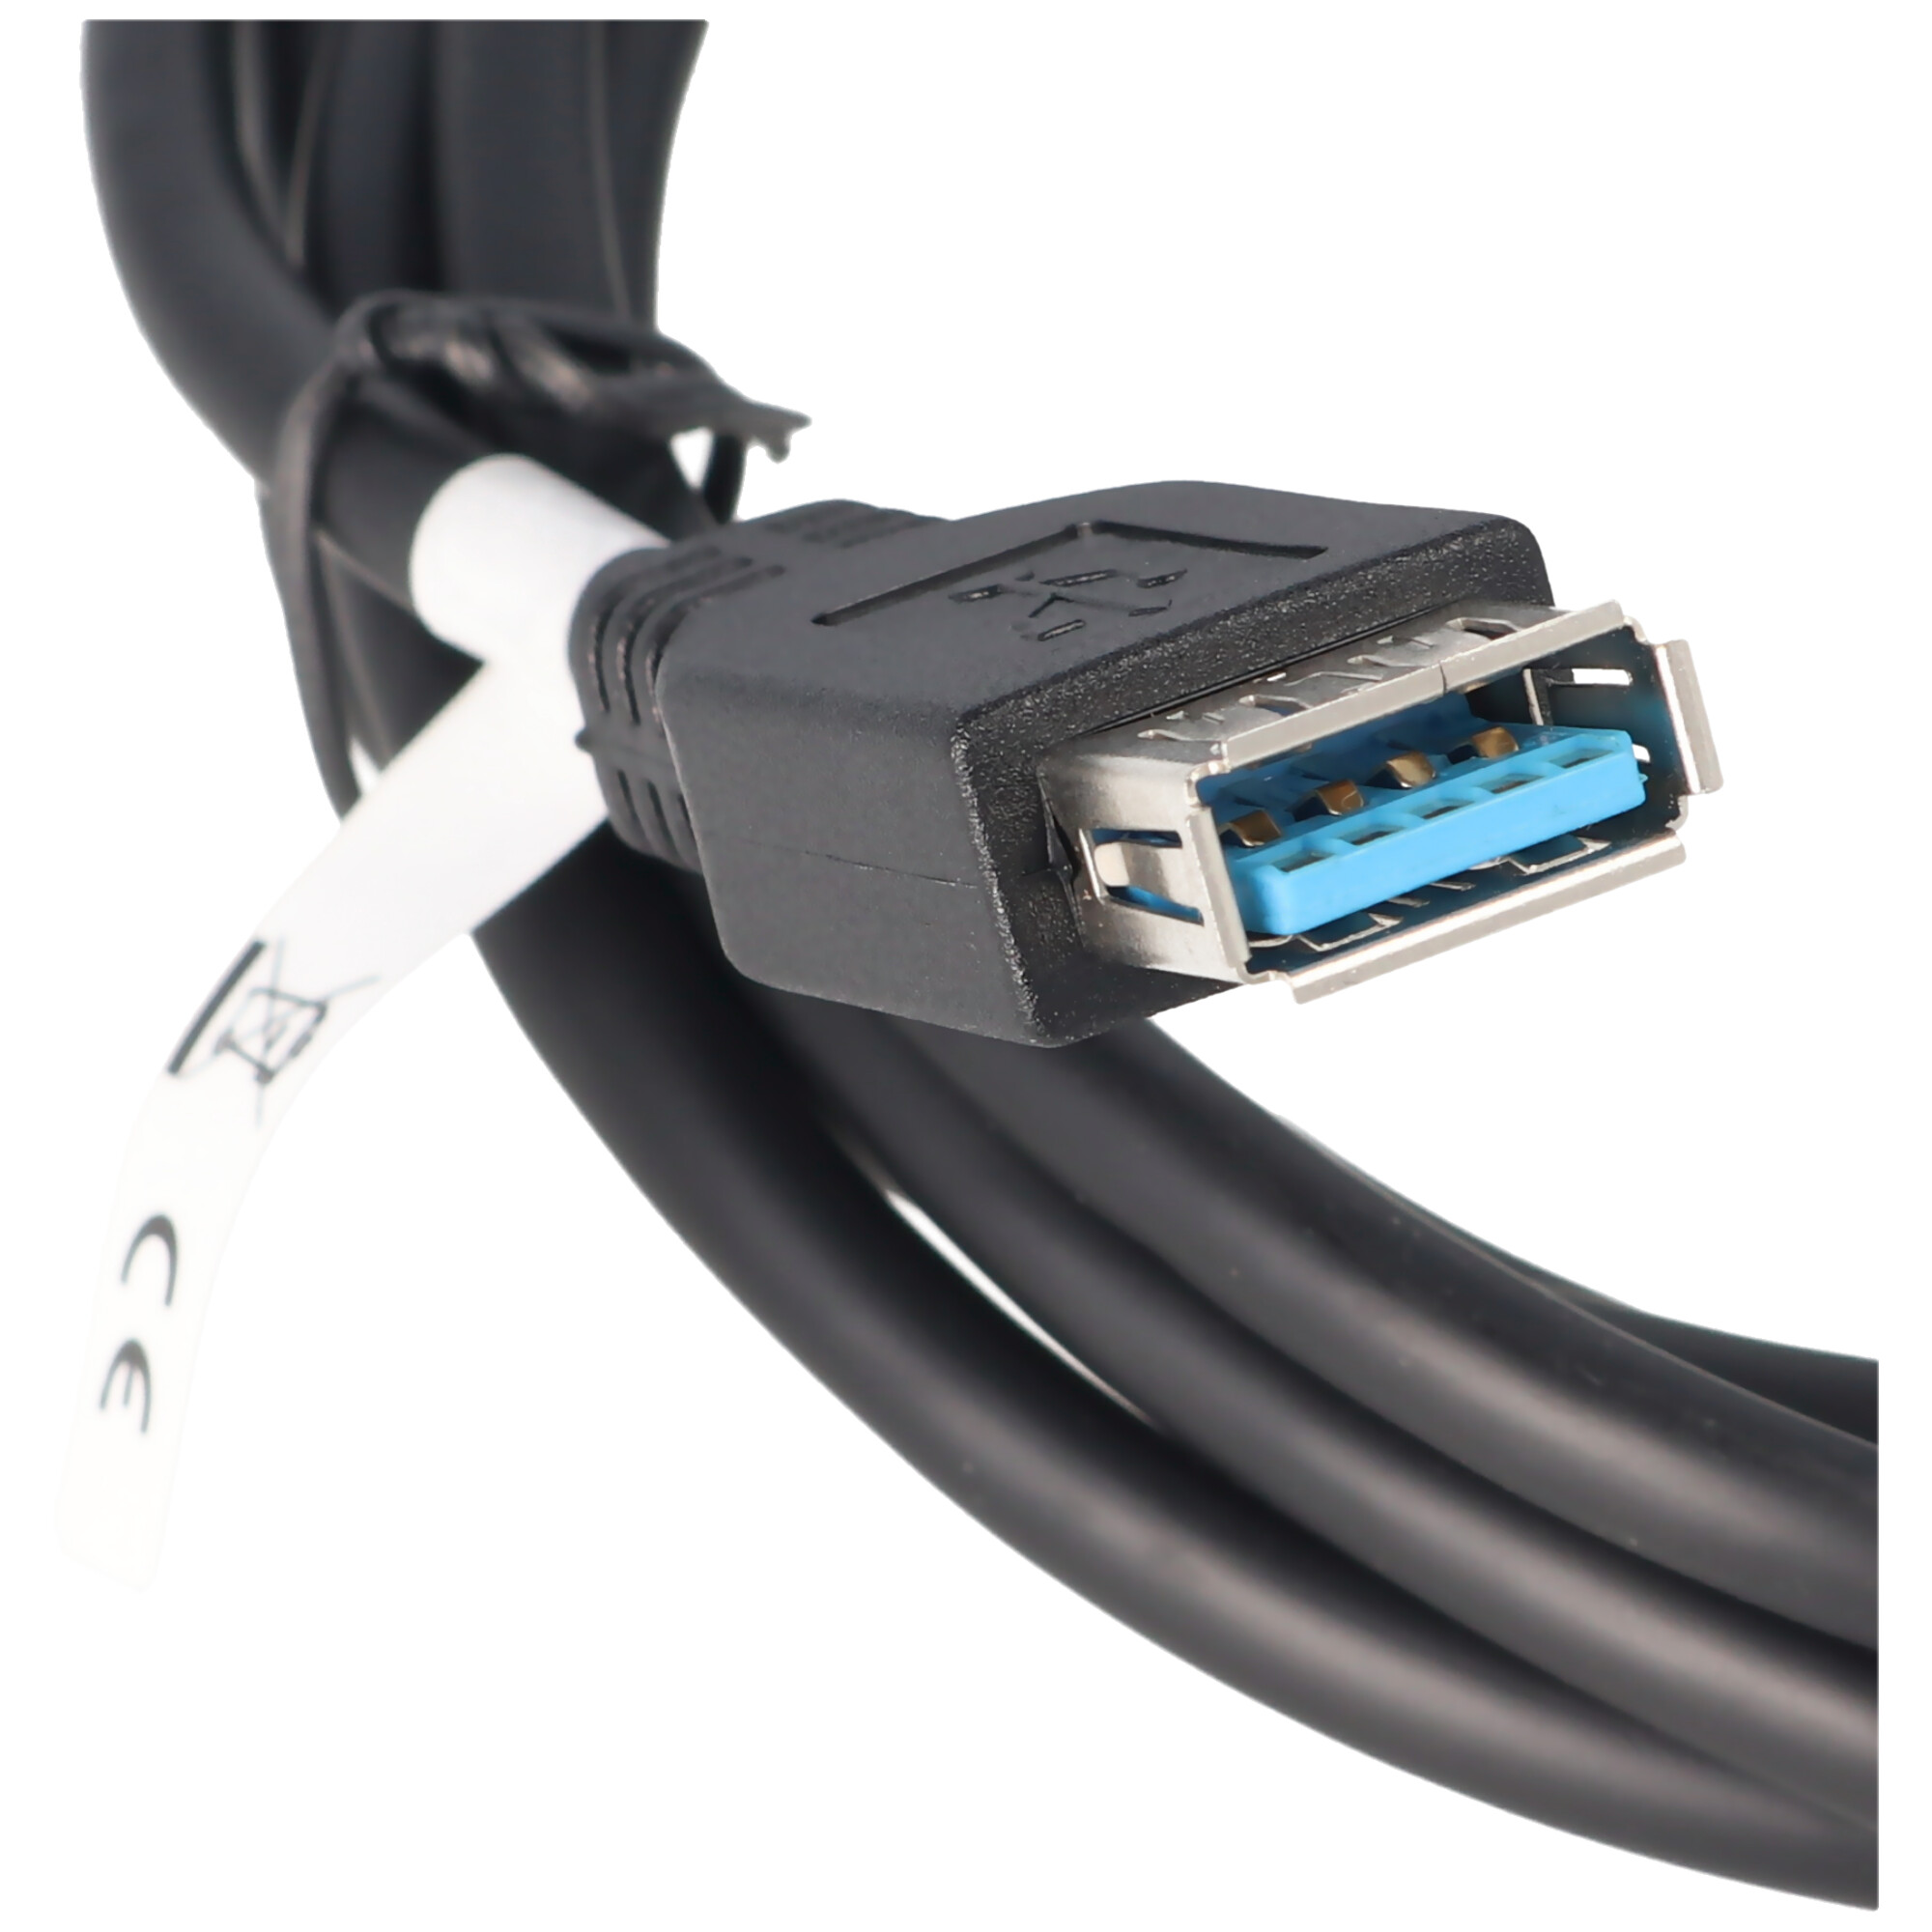 USB 3.0 SuperSpeed Kabel 1,8 Meter A-Stecker auf A-Buchse